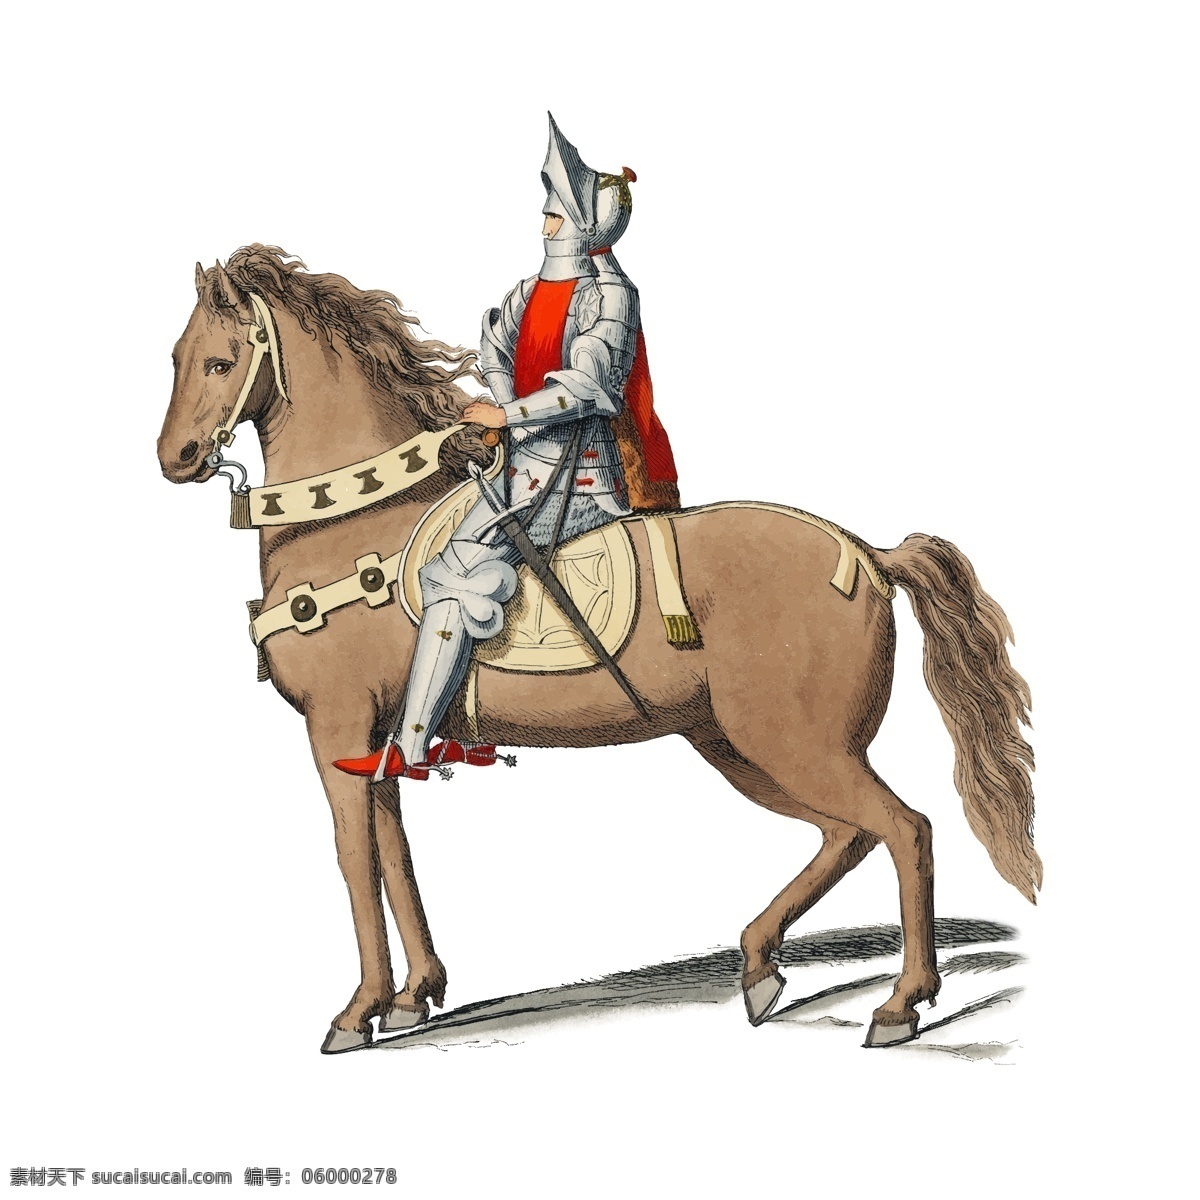 士兵骑马 士兵 骑马 马 将军 欧洲 人物 古代人物 古代元素 古代生活 ai素材 生活百科